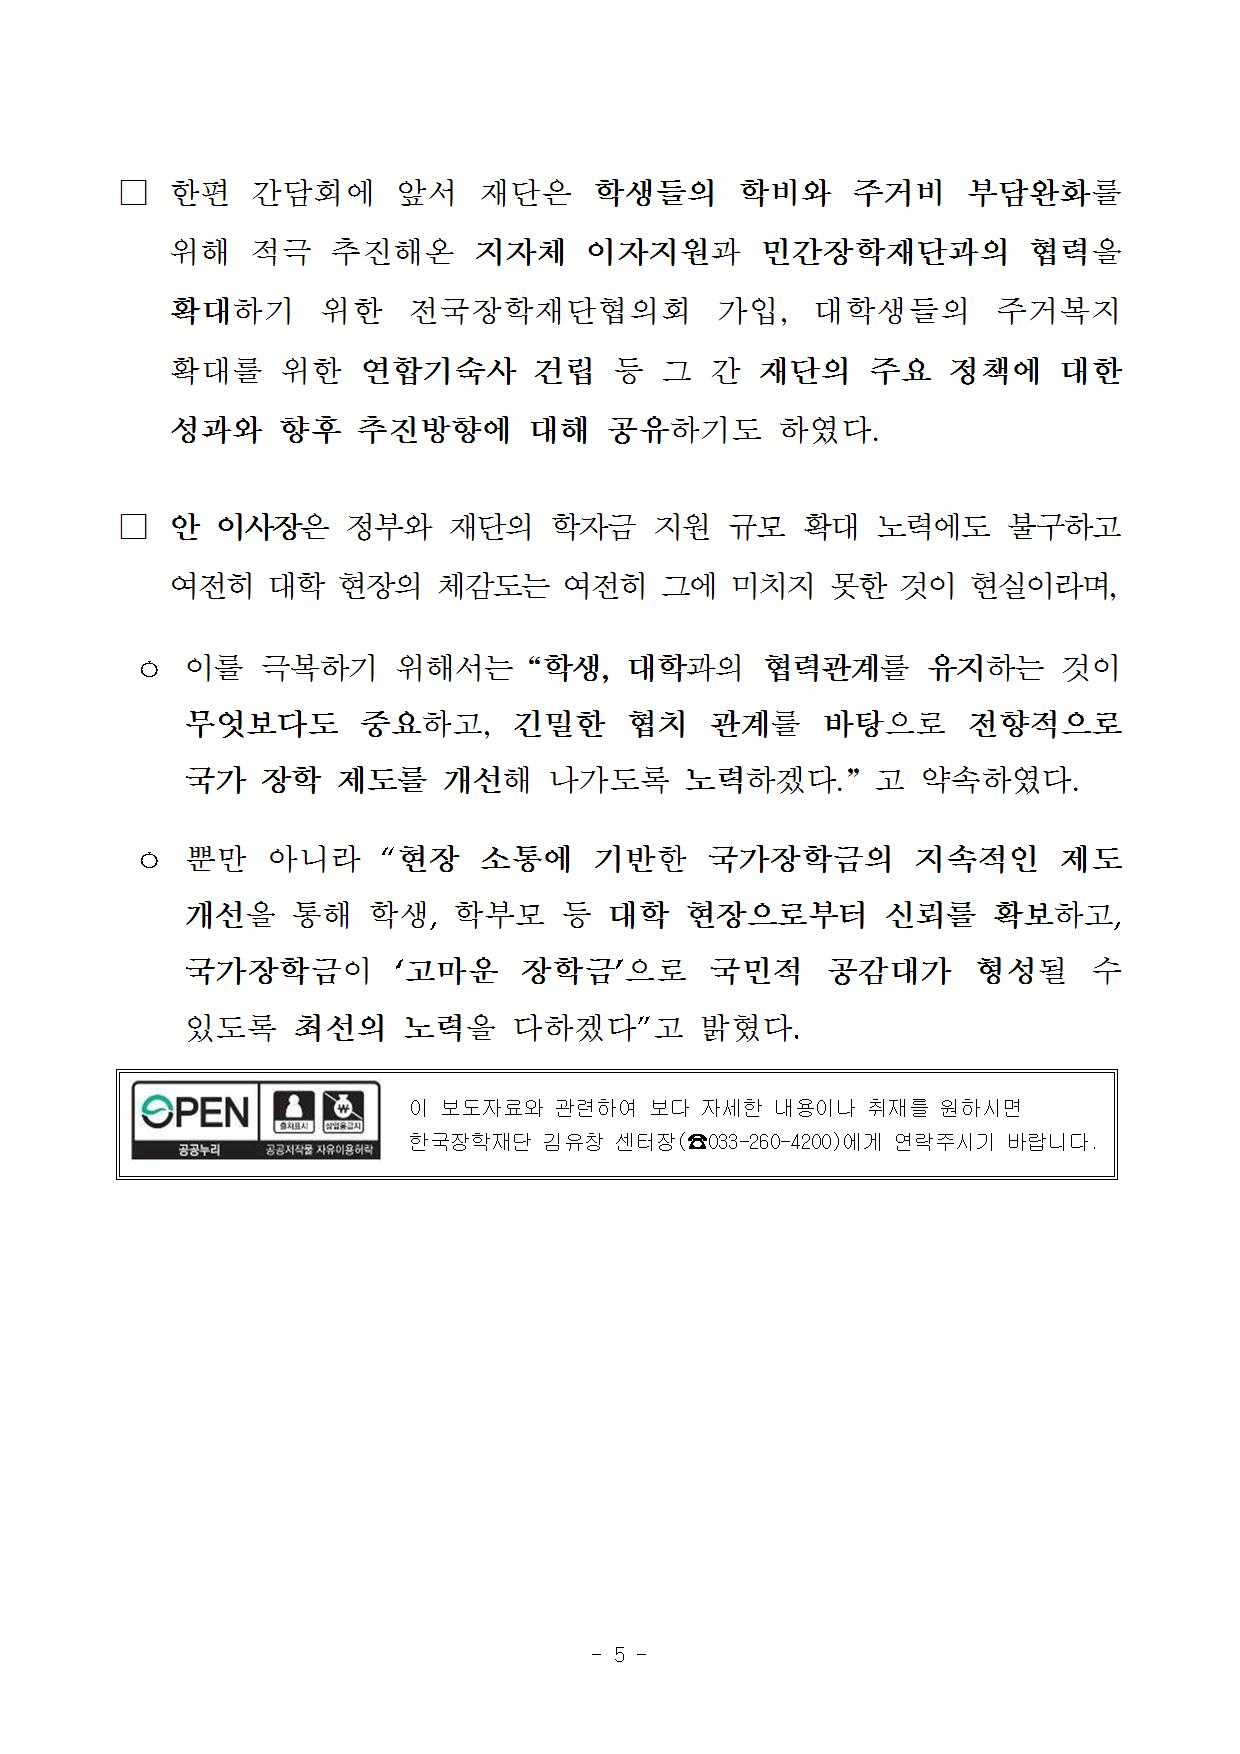 06-23(금)[보도자료] 강원권역 현장 소통 간담회 개최005.jpg